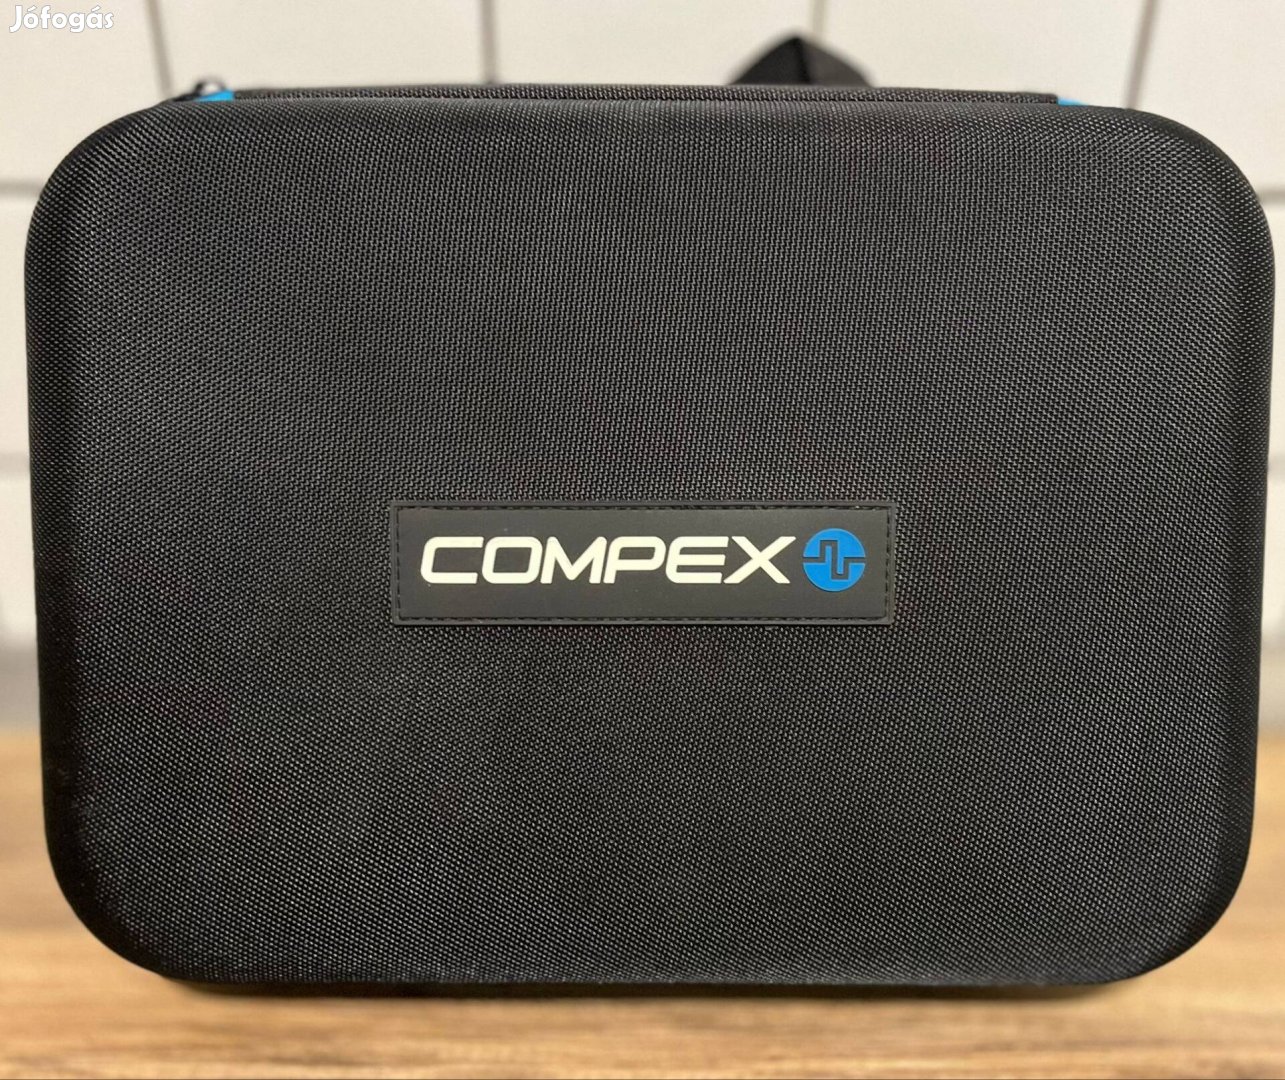 Compex fixx1.0 masszázspisztoly